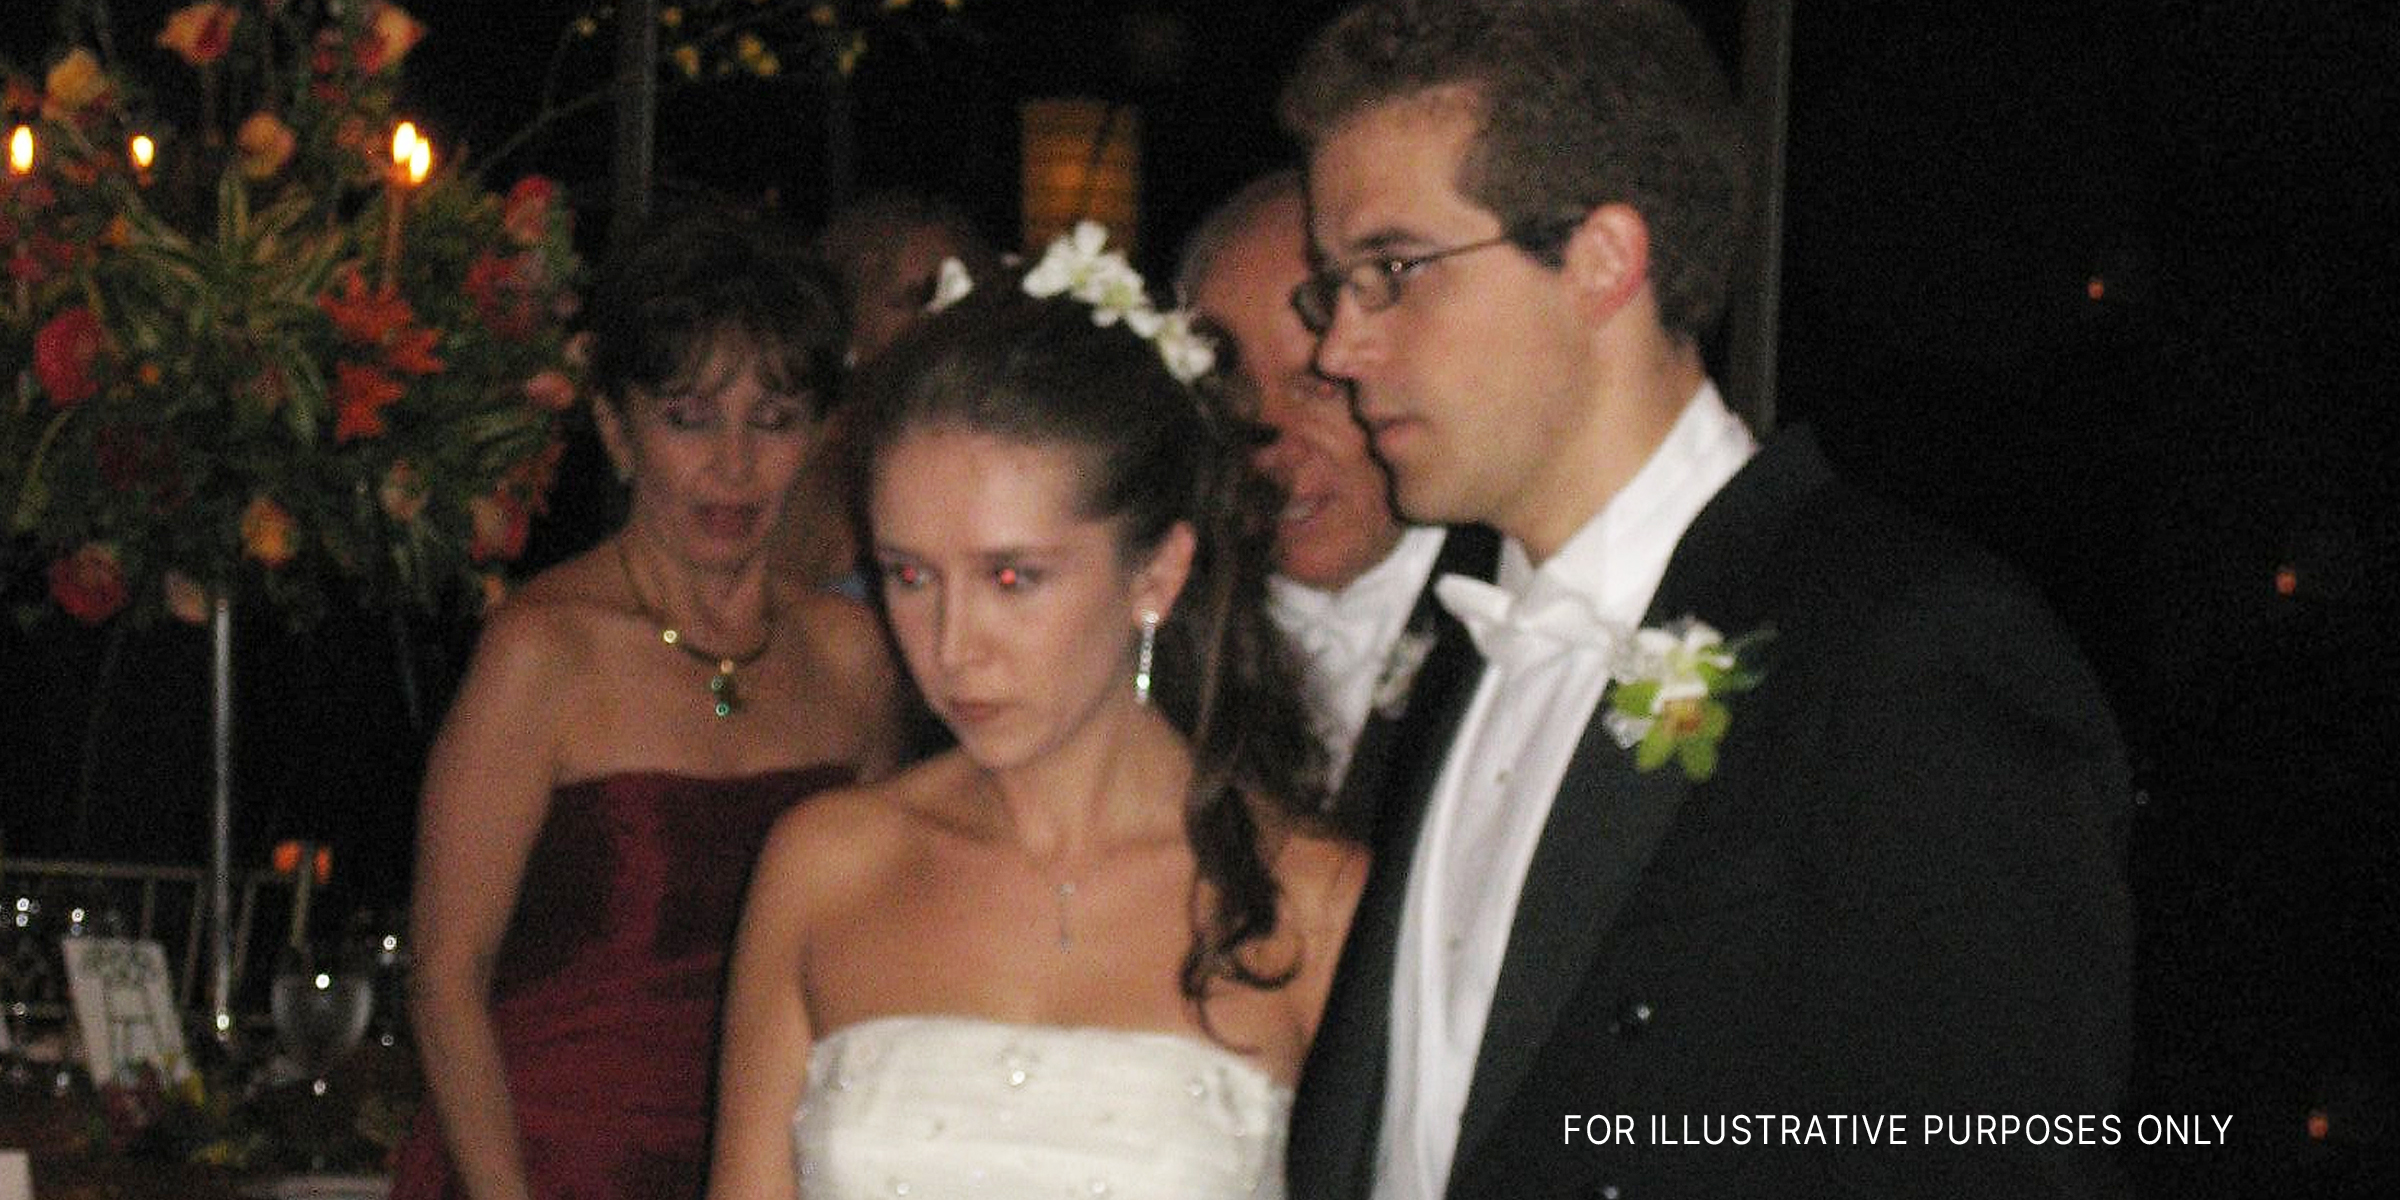 Ein Ehepaar bei seiner Hochzeit. | Quelle: Shutterstock